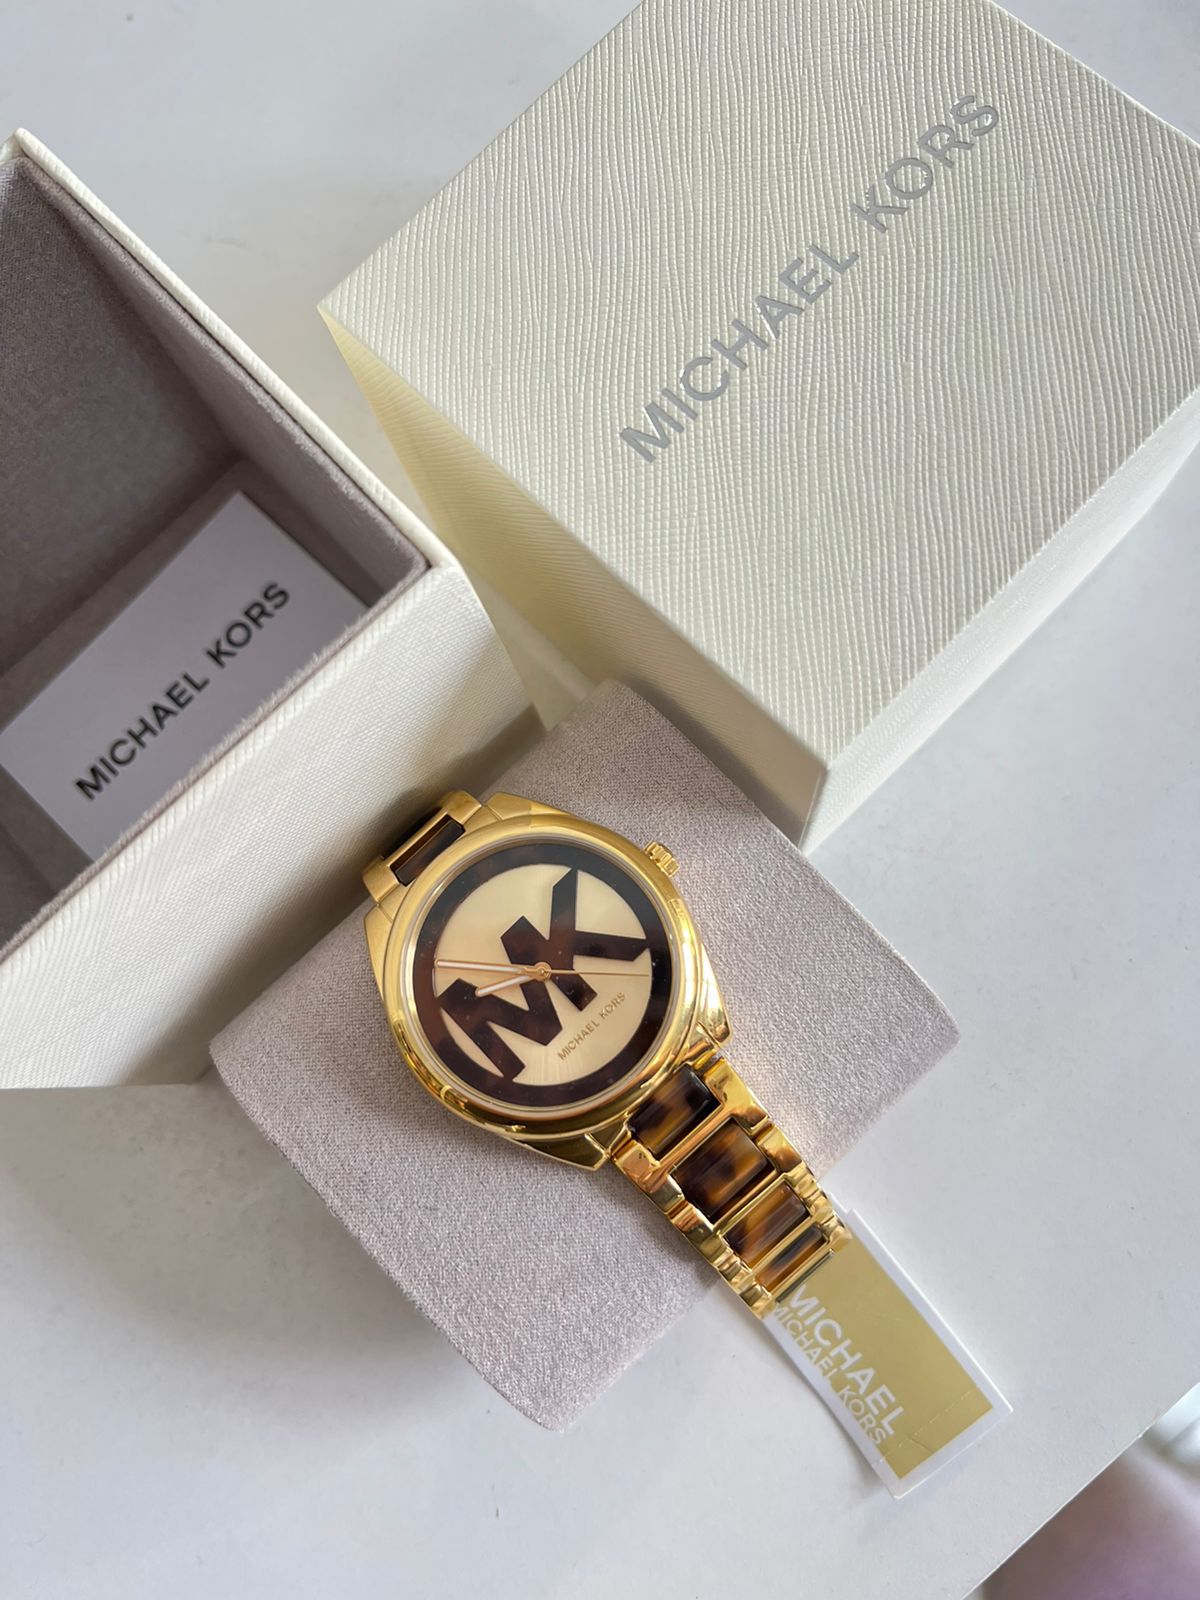 Relógio Feminino Michael Kors Tartaruga Original - Cosmeticos da ray